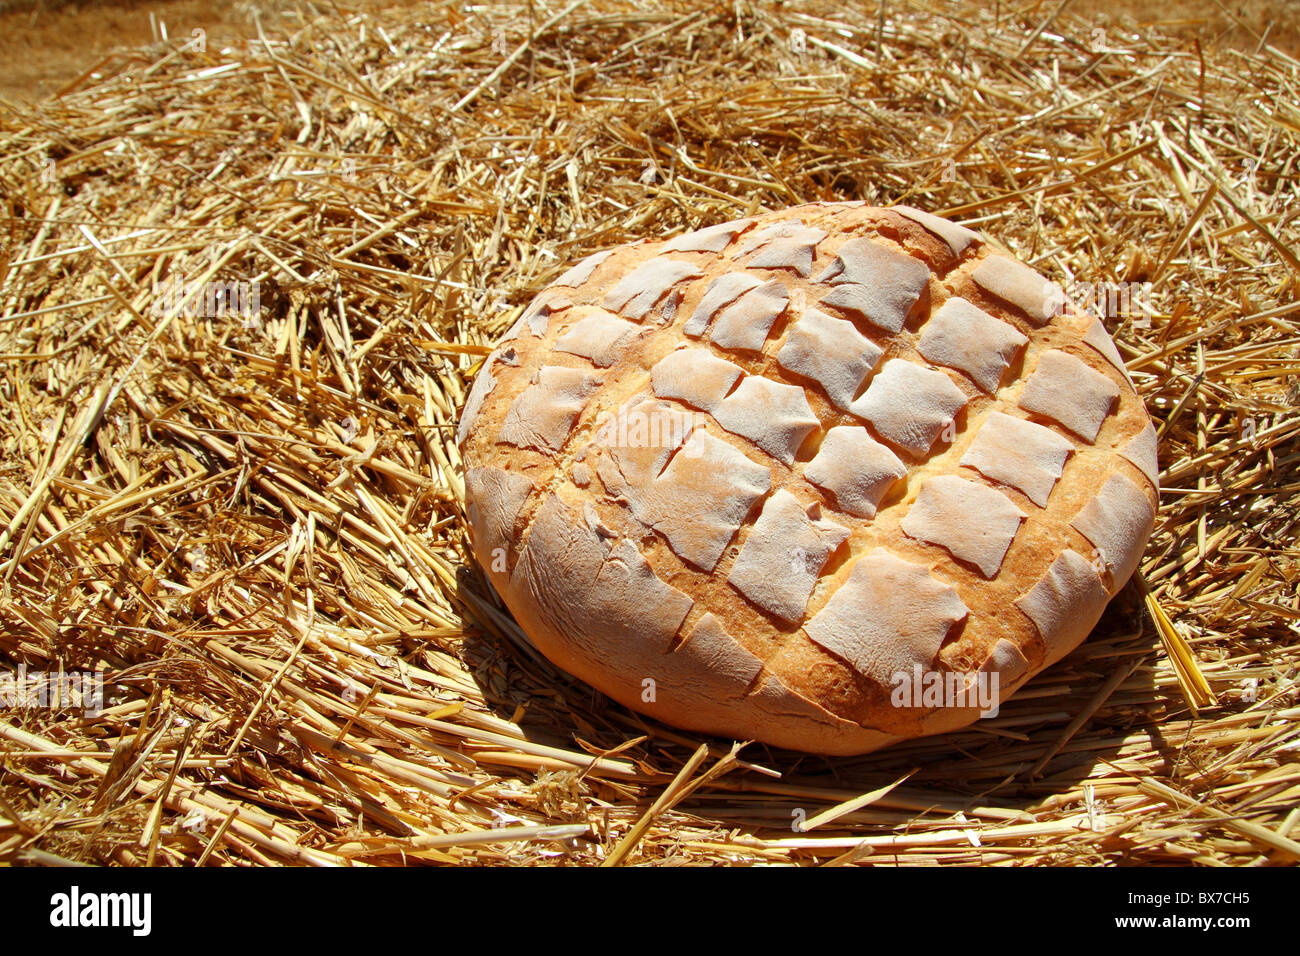 Brot Brötchen-Runde zum goldenen Weizenstroh Hintergrund Stockfoto